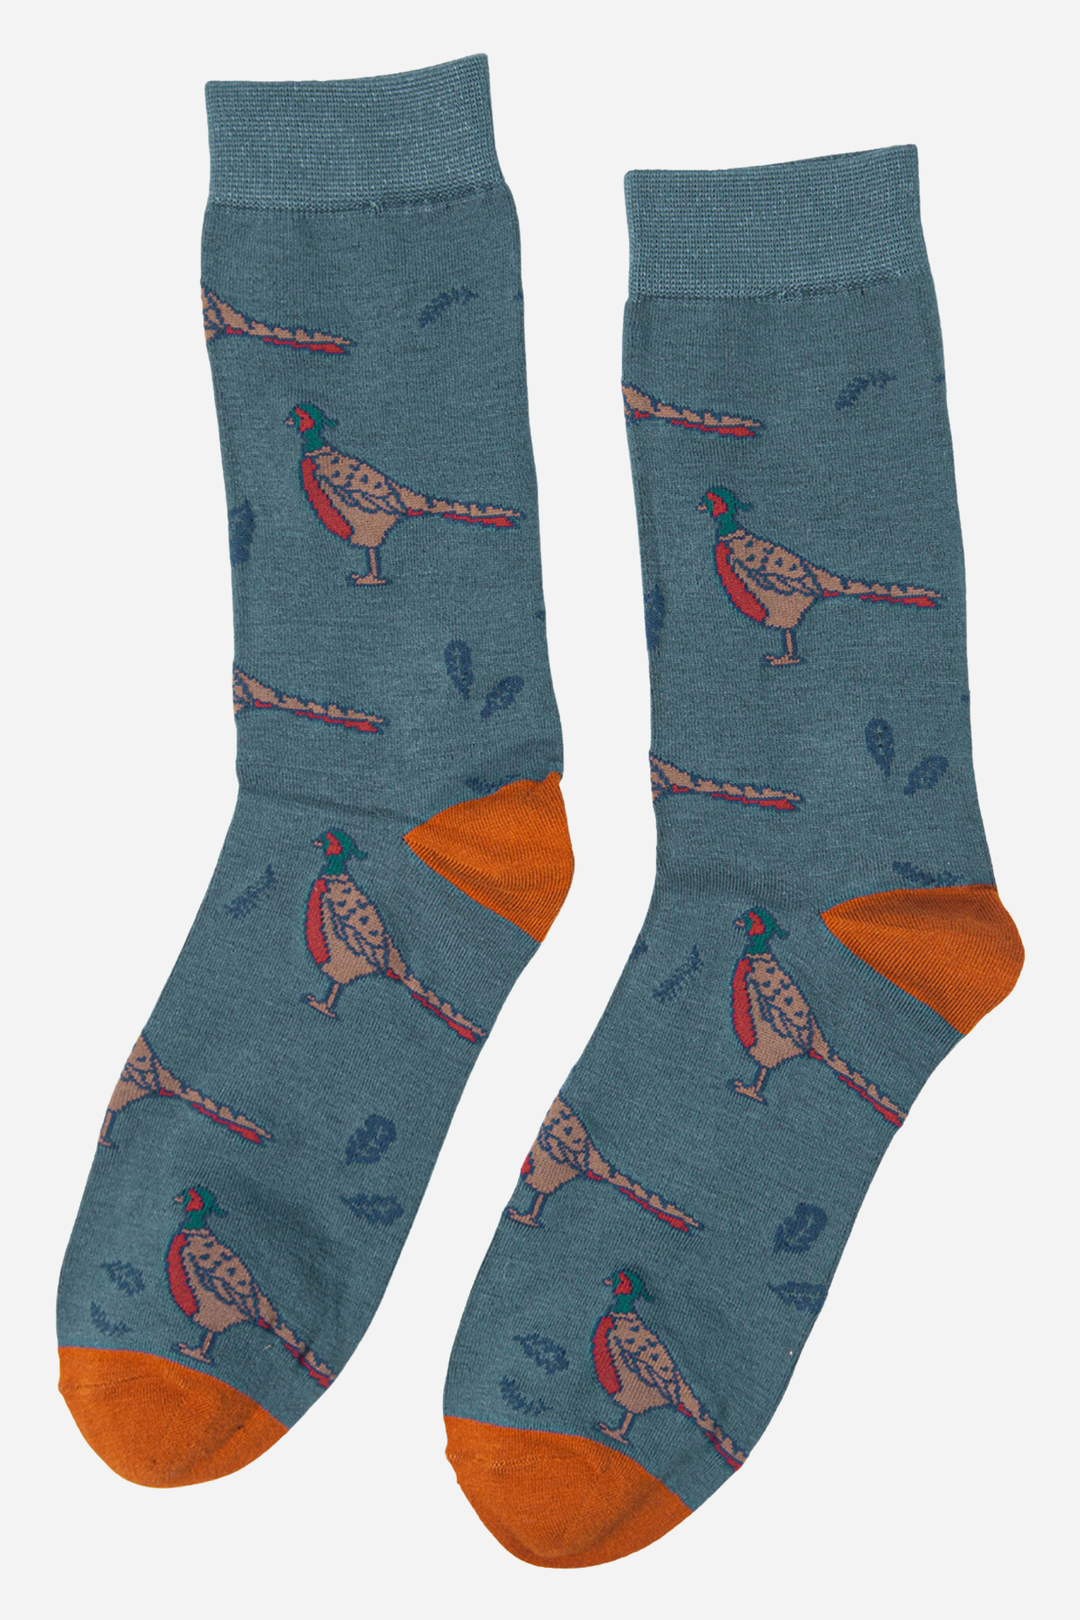 Sock Talk - Teal Men's Pheasant Print Bamboo Socks